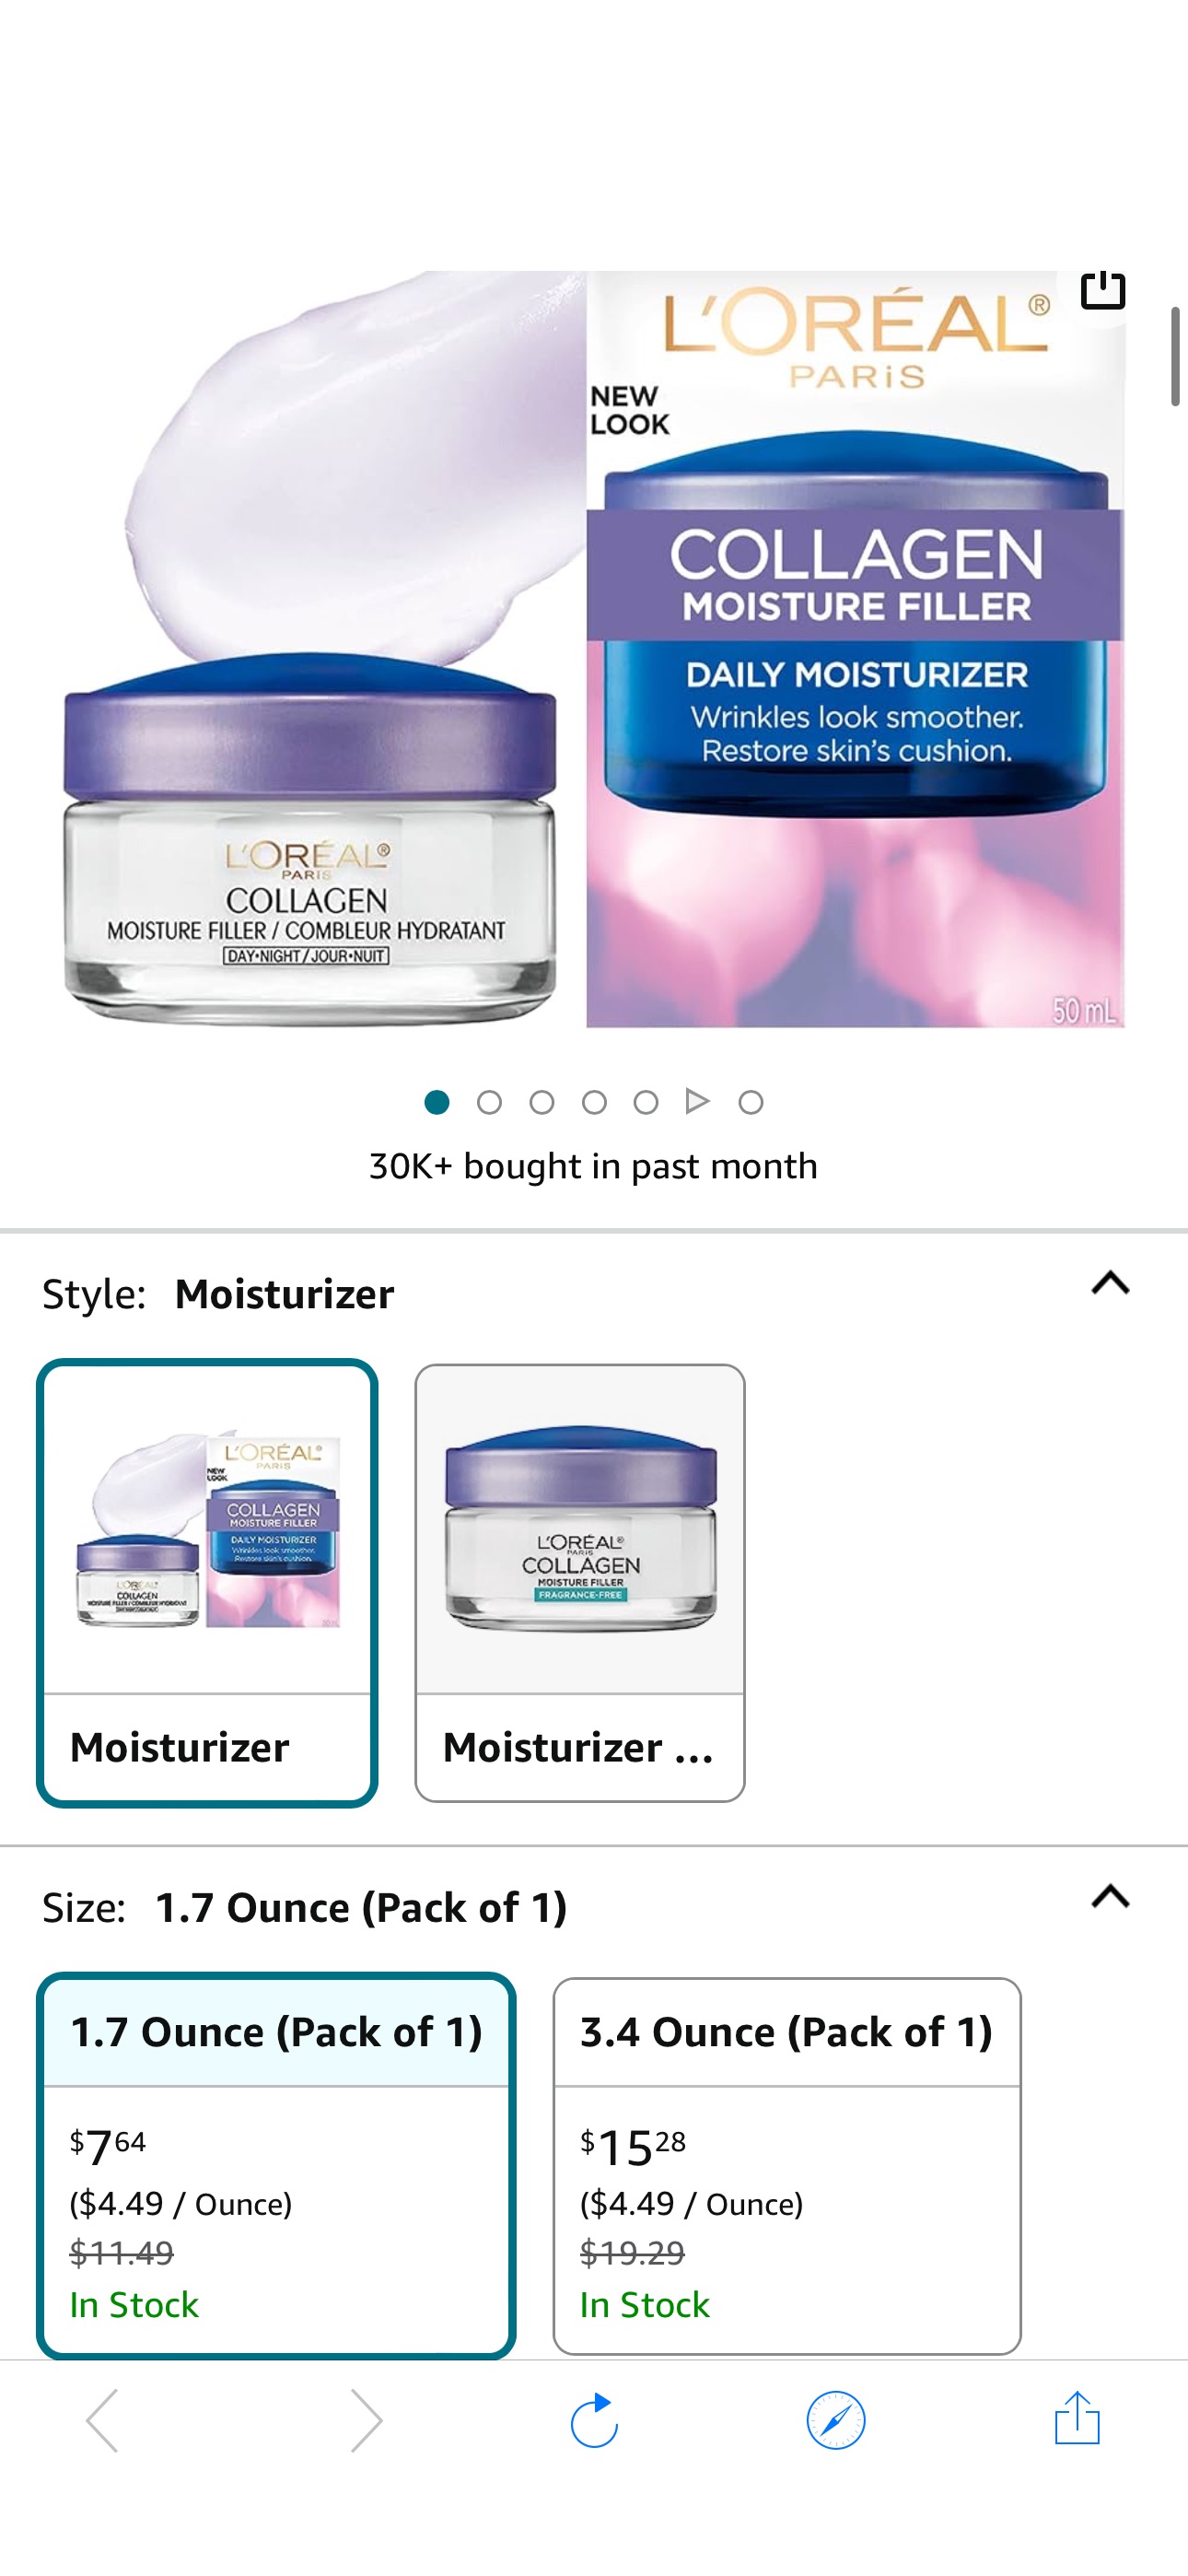 Amazon.com: L’Oréal Paris Collagen Daily Face Moisturizer, Reduce Wrinkles, Face Cream 1.7 oz : Beauty & Personal Care   2.78 after clip 4.05 Q+ 15%s&s 
有些人還會有10% Q  可以到旁邊產品找看看